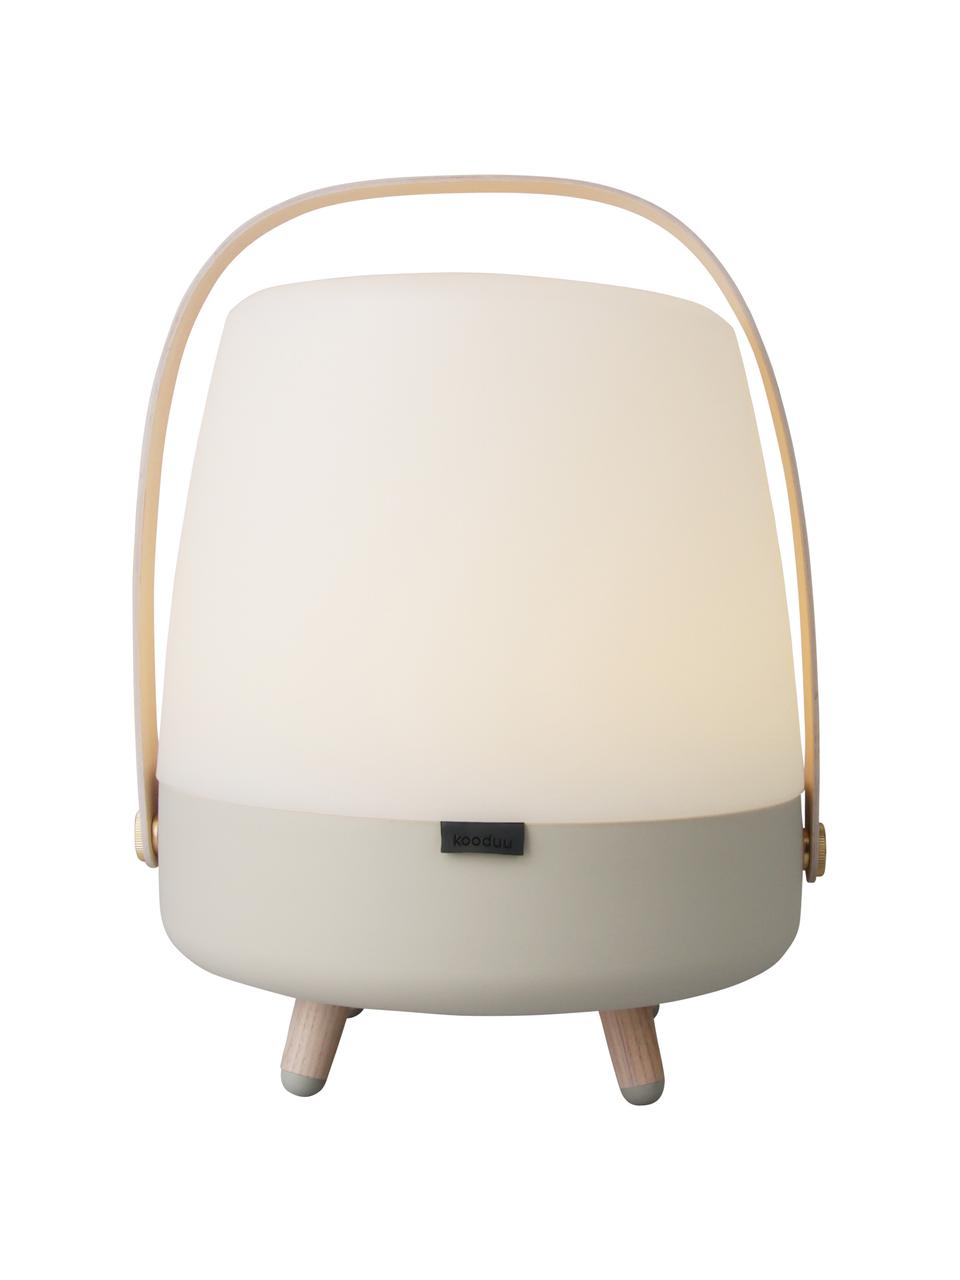 Mobile LED-Aussentischleuchte Lite-up Play mit Bluetooth-Lautsprecher, Lampenschirm: Kunststoff, Griff: Holz, Sandfarben, Transparent, Hellbraun, Ø 29 x H 40 cm